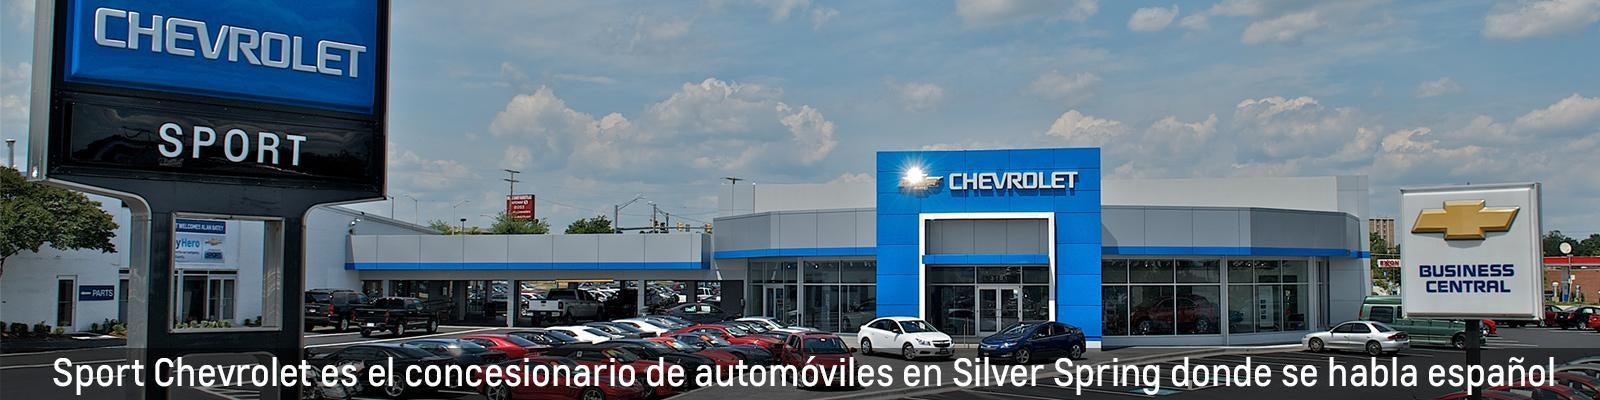 Sport Chevrolet es el concesionario de automoviles en Silver Spring donde se habla espanol